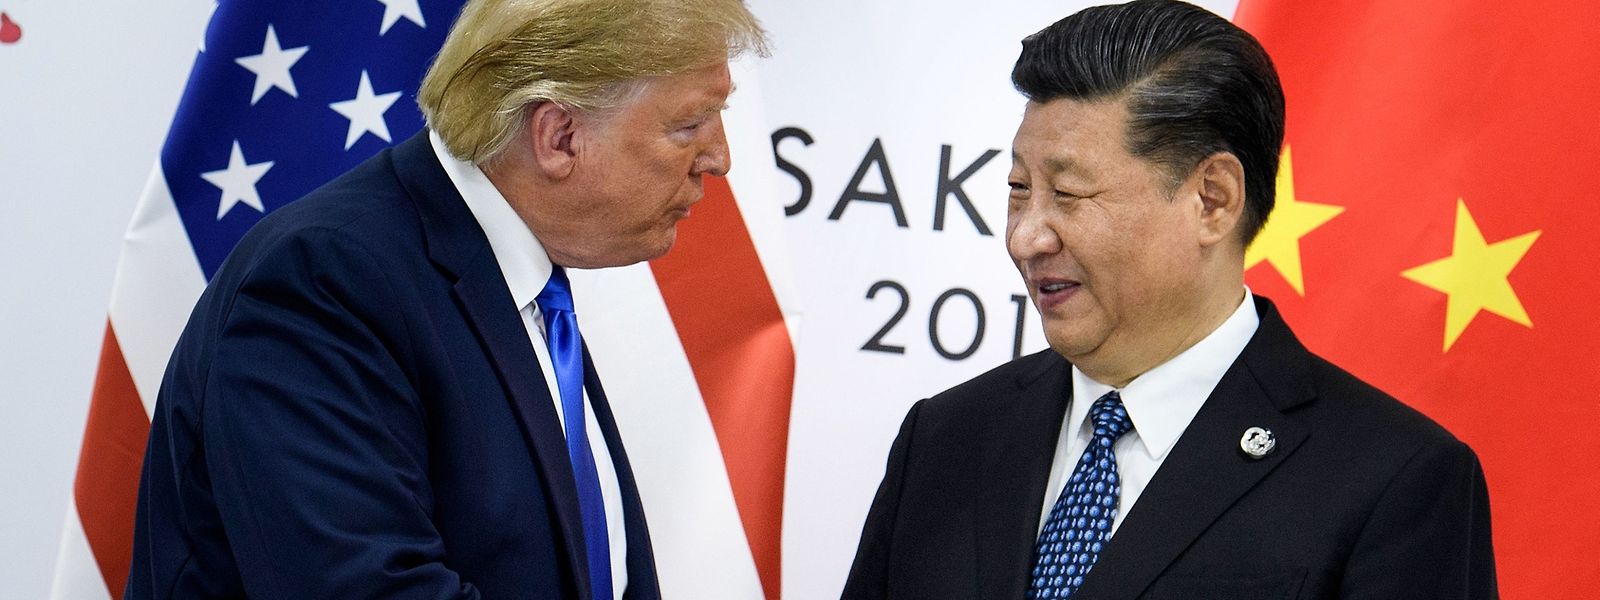 In einer weiteren Kurzbotschaft schlug Donald Trump Chinas Staats- und Parteichef Xi Jinping ein persönliches Treffen vor.